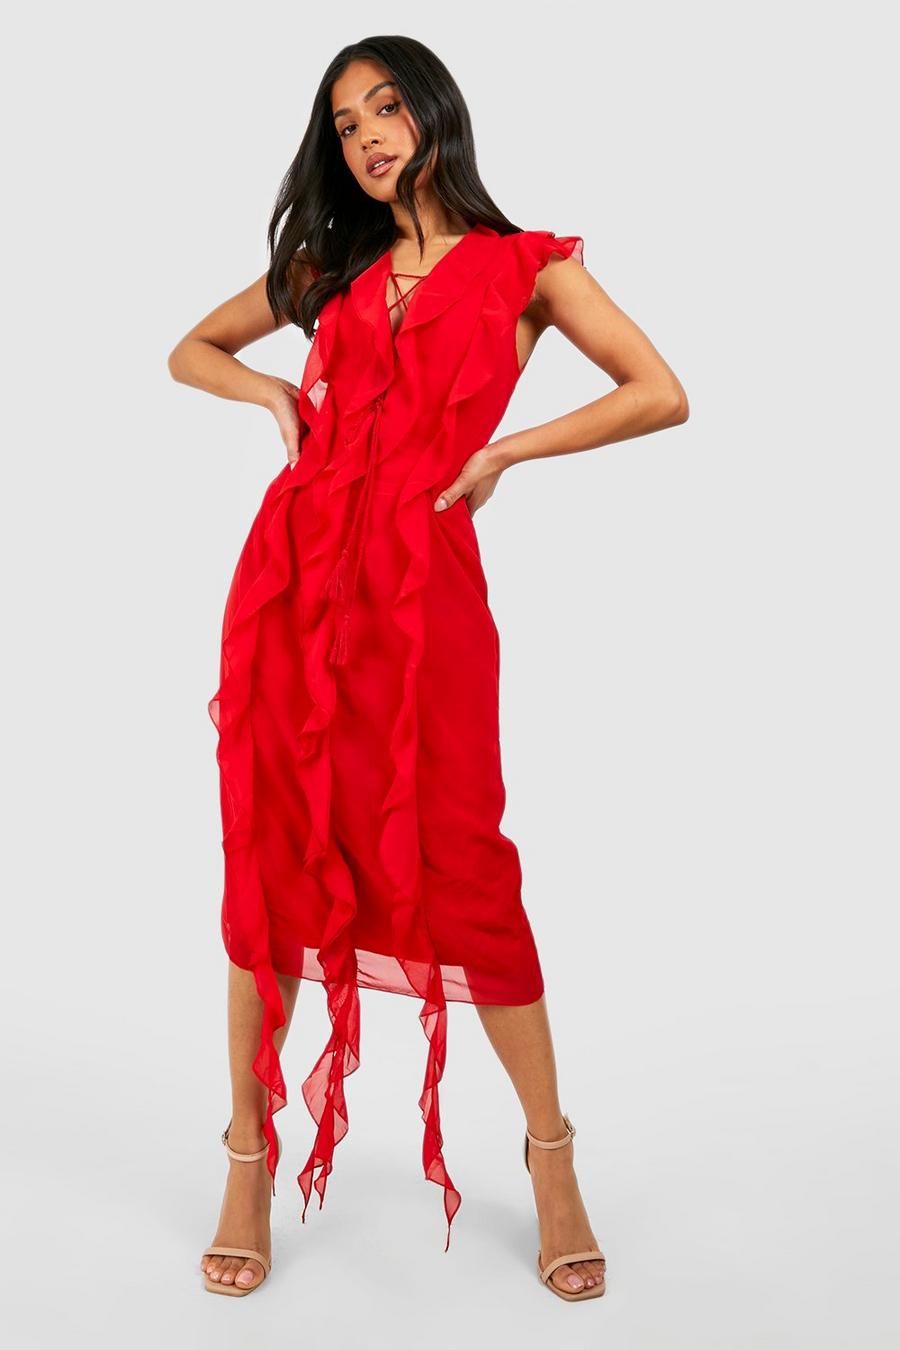 Red Petite Chiffon Sleeveless Ruffle Boho Dress